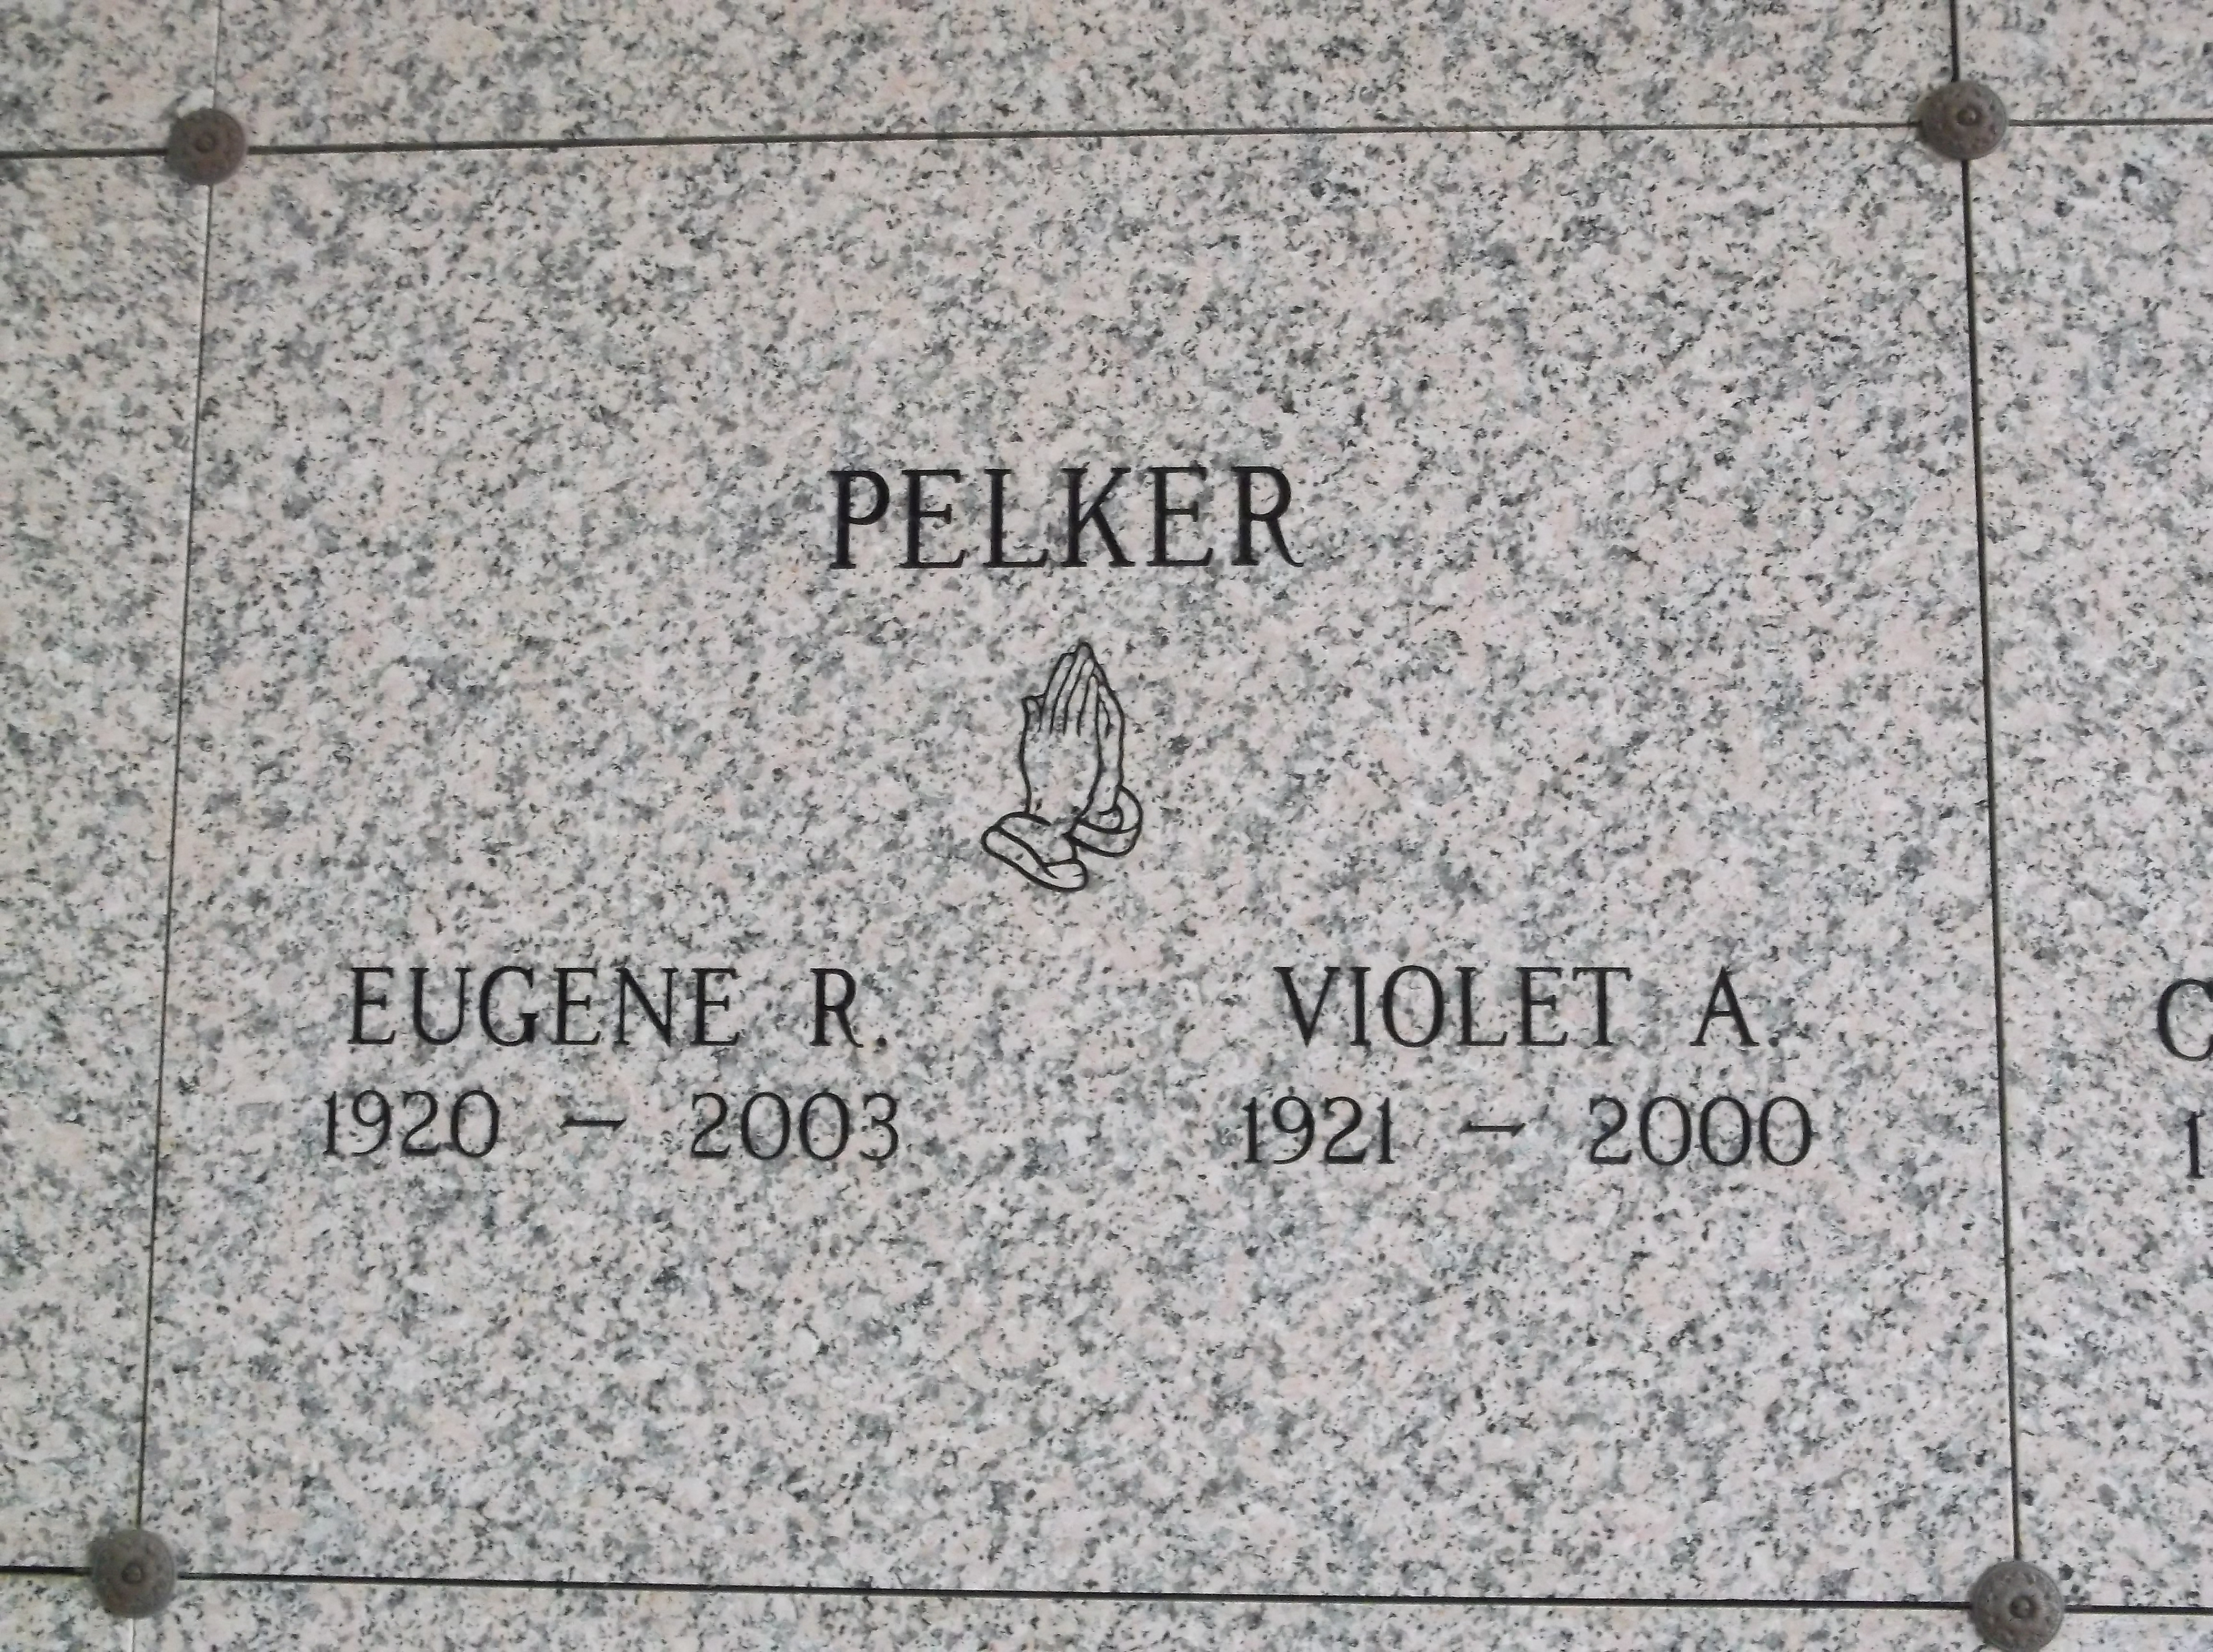 Violet A Pelker